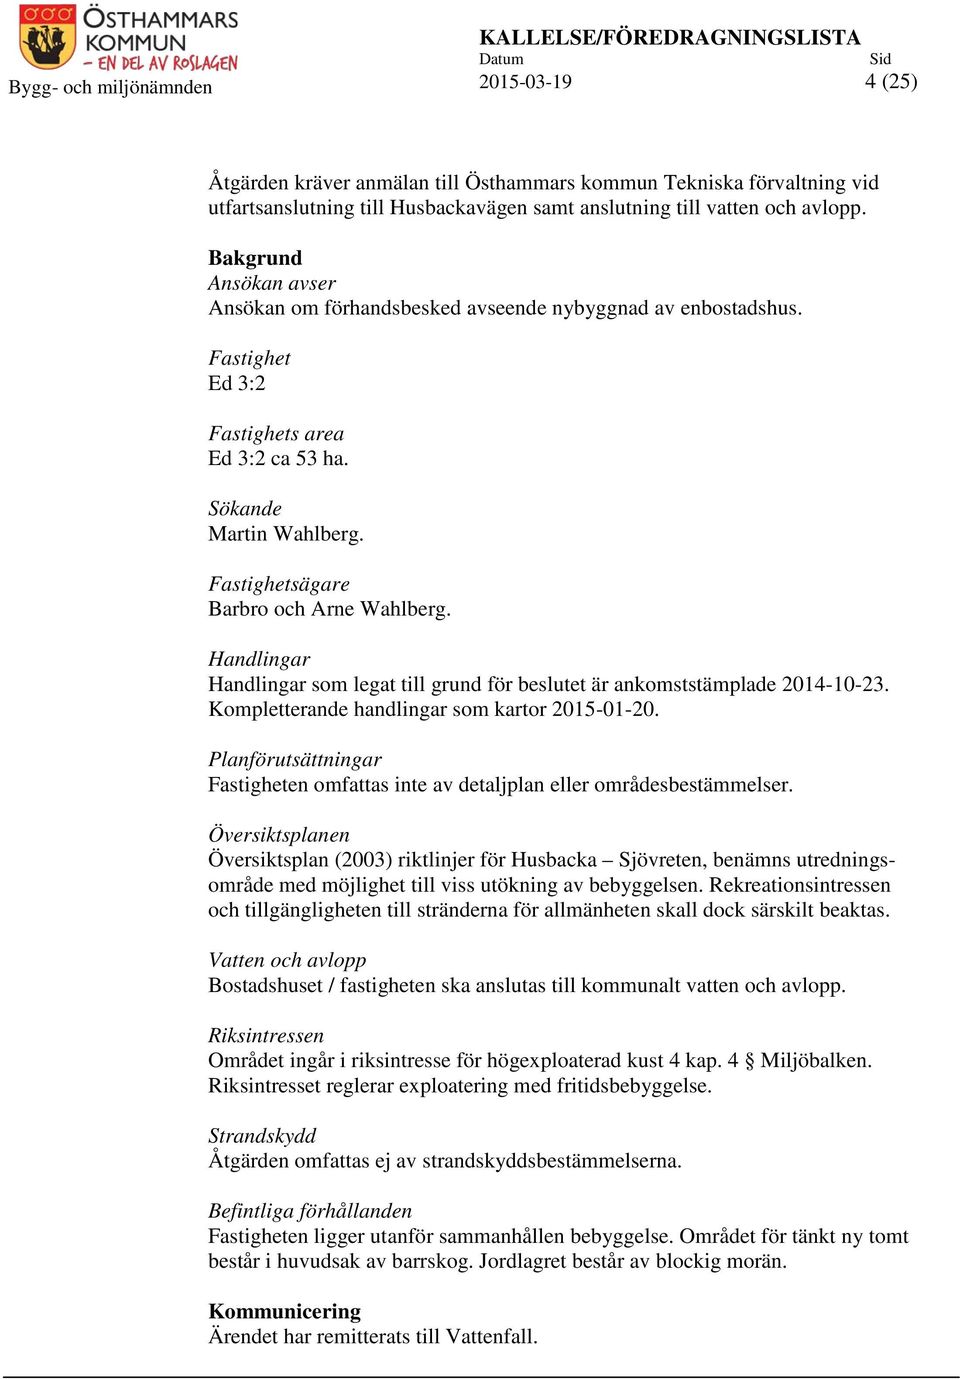 Fastighetsägare Barbro och Arne Wahlberg. Handlingar Handlingar som legat till grund för beslutet är ankomststämplade 2014-10-23. Kompletterande handlingar som kartor 2015-01-20.